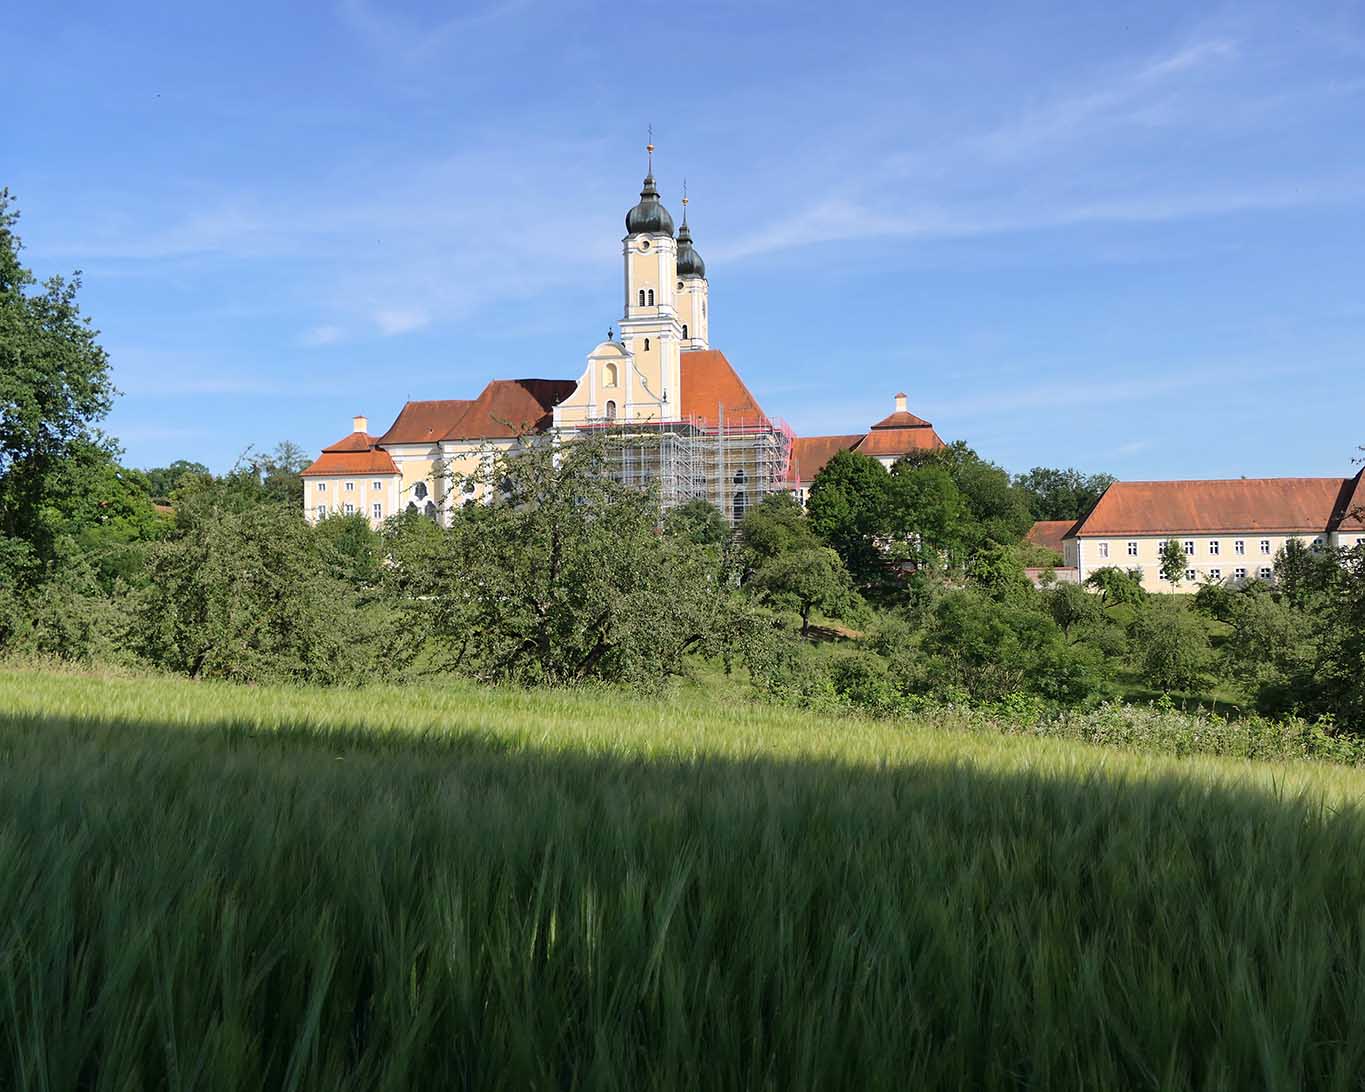 Prämonstratenser-Kloster Roggenburg in der Gesamtansicht